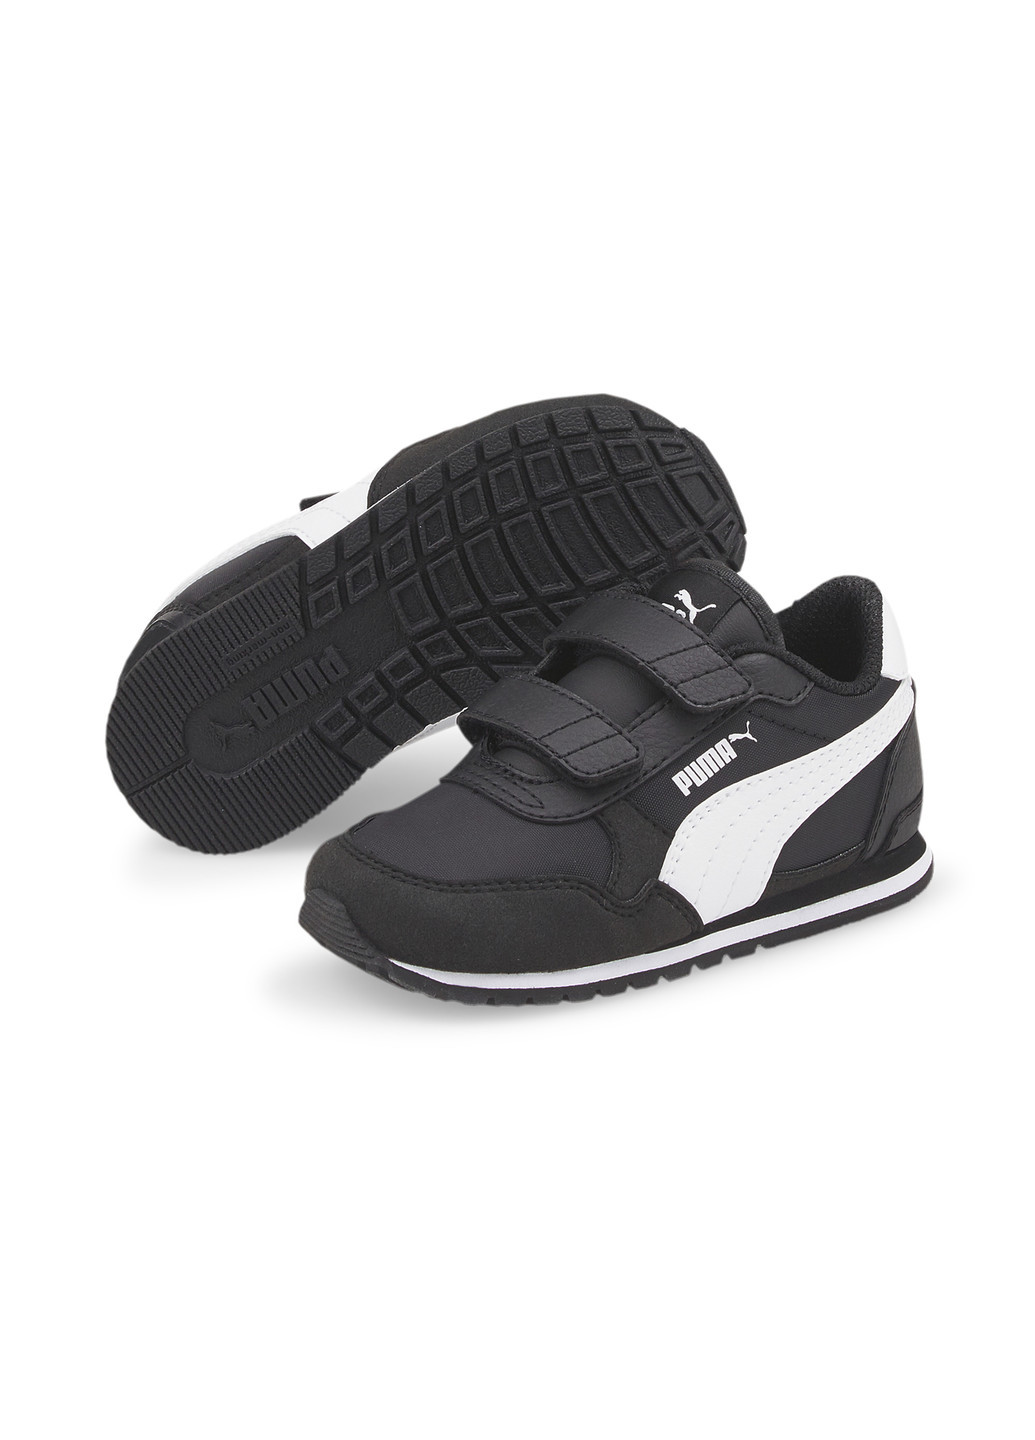 Черные детские кроссовки st runner v3 nl ac sneakers babies Puma